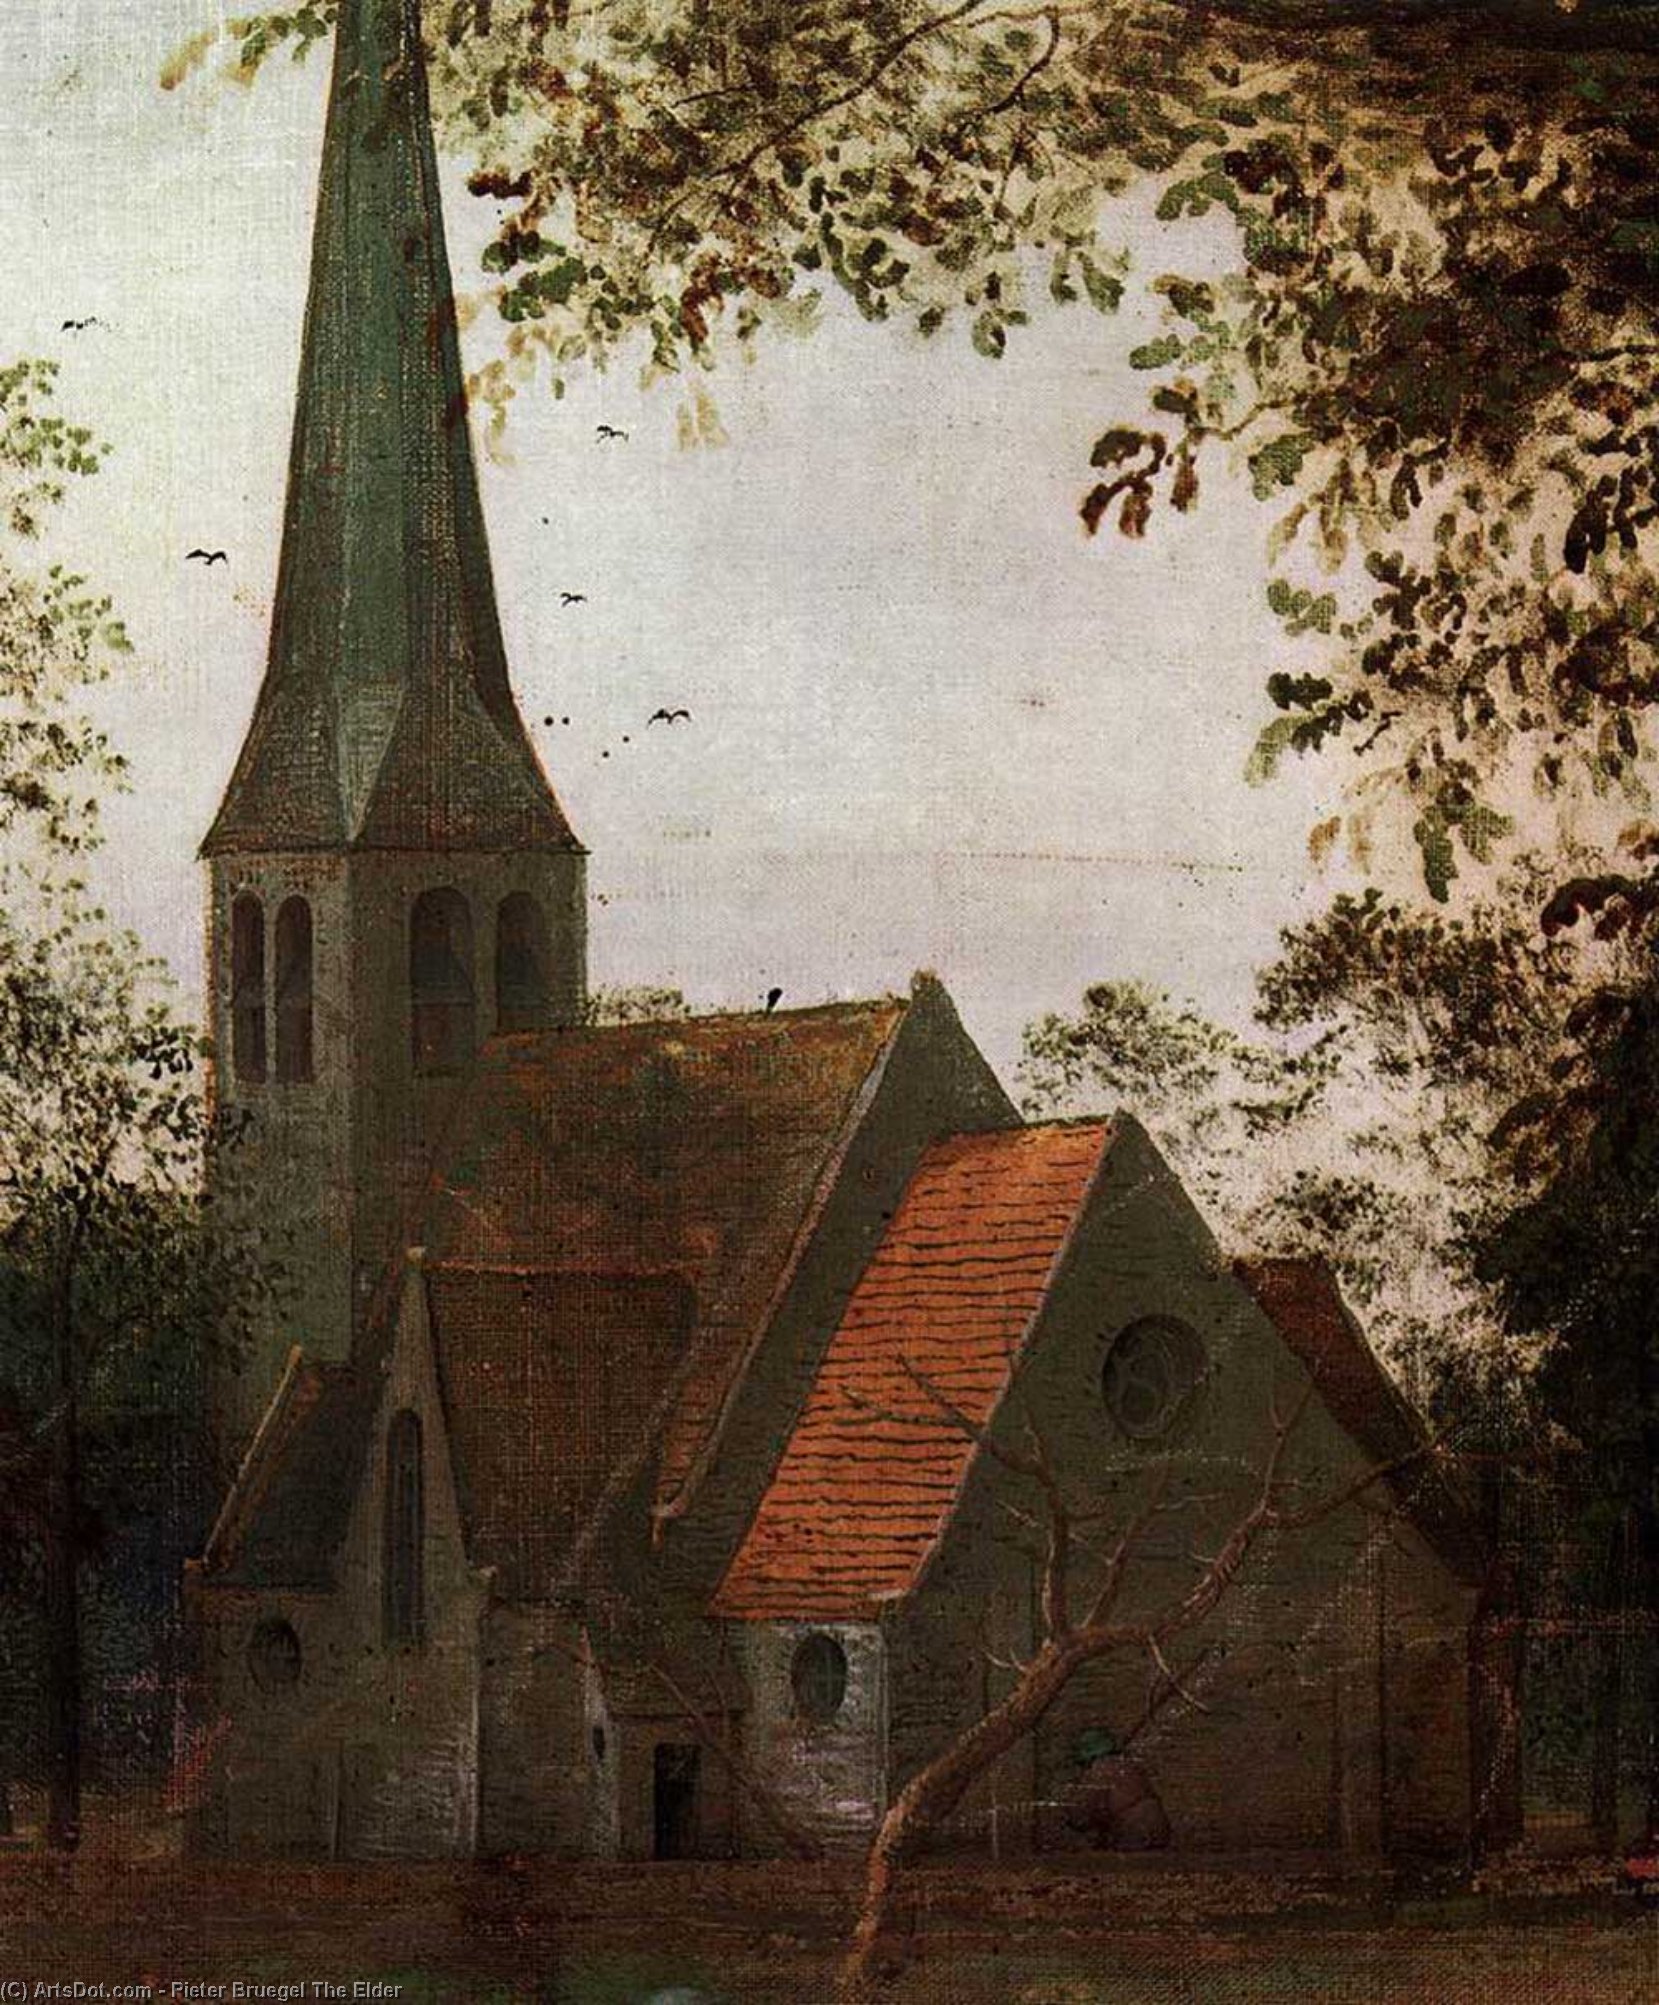 WikiOO.org - אנציקלופדיה לאמנויות יפות - ציור, יצירות אמנות Pieter Bruegel The Elder - The Parable of the Blind Leading the Blind (detail)